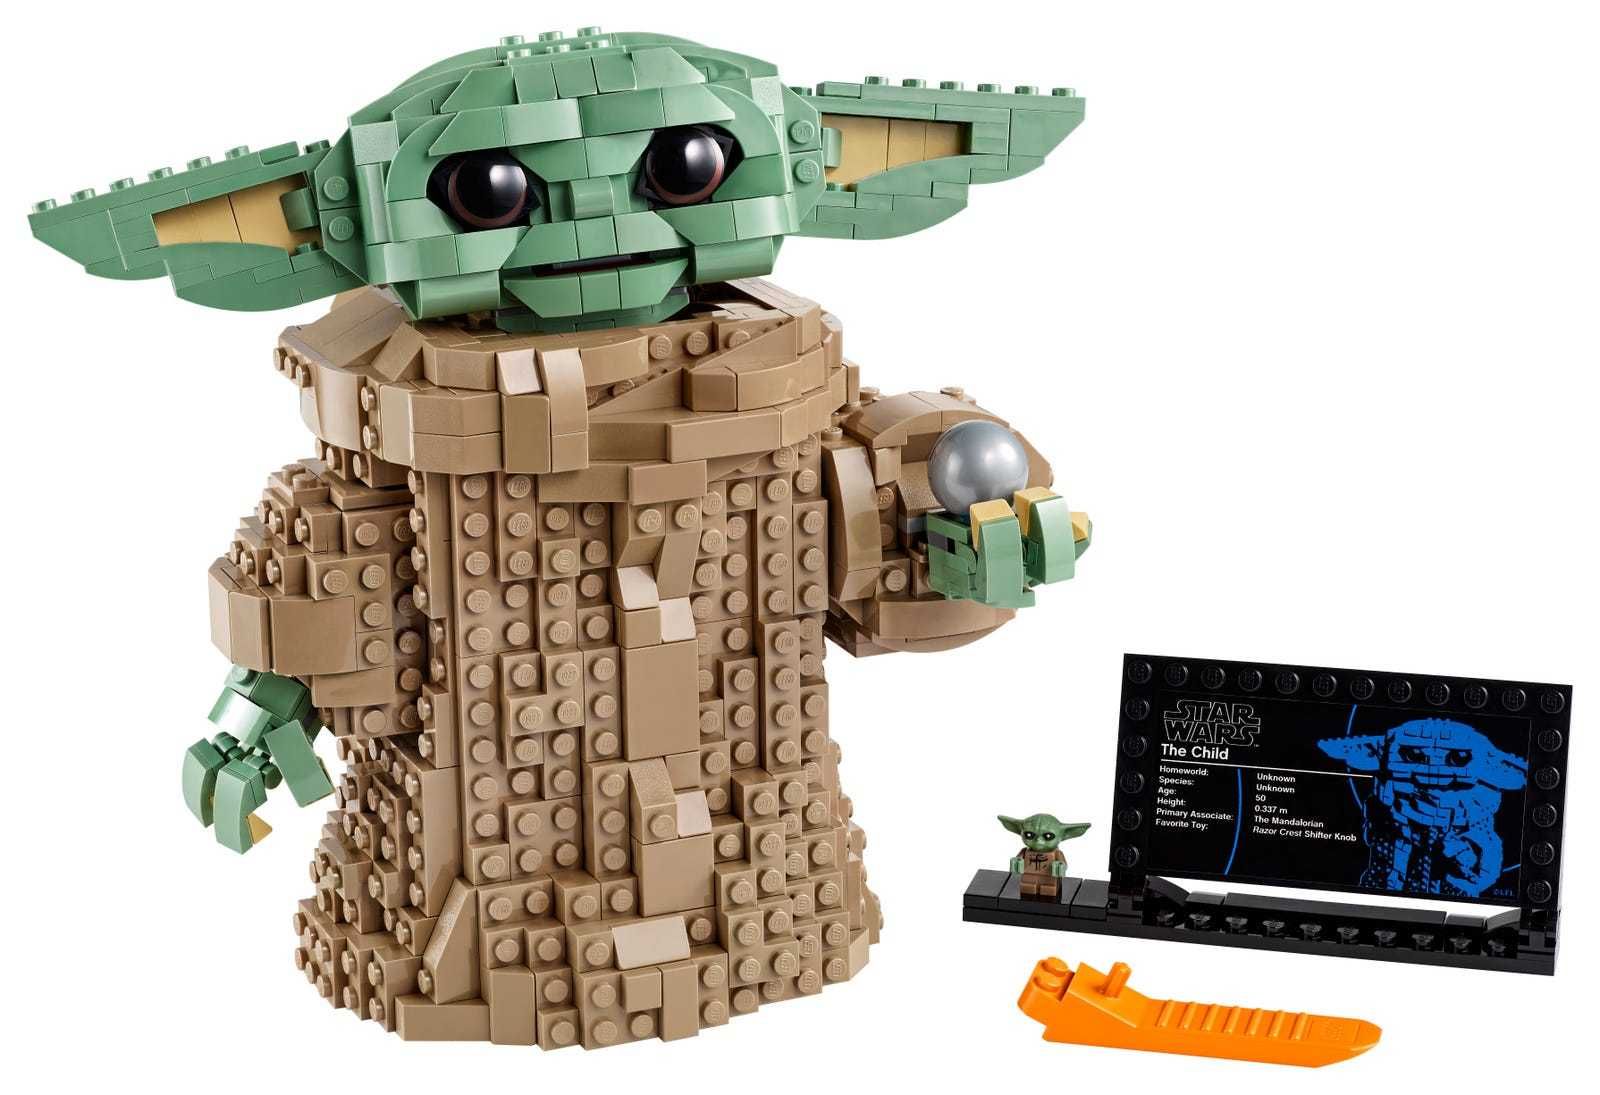 LEGO 75318 Star Wars - Dziecko